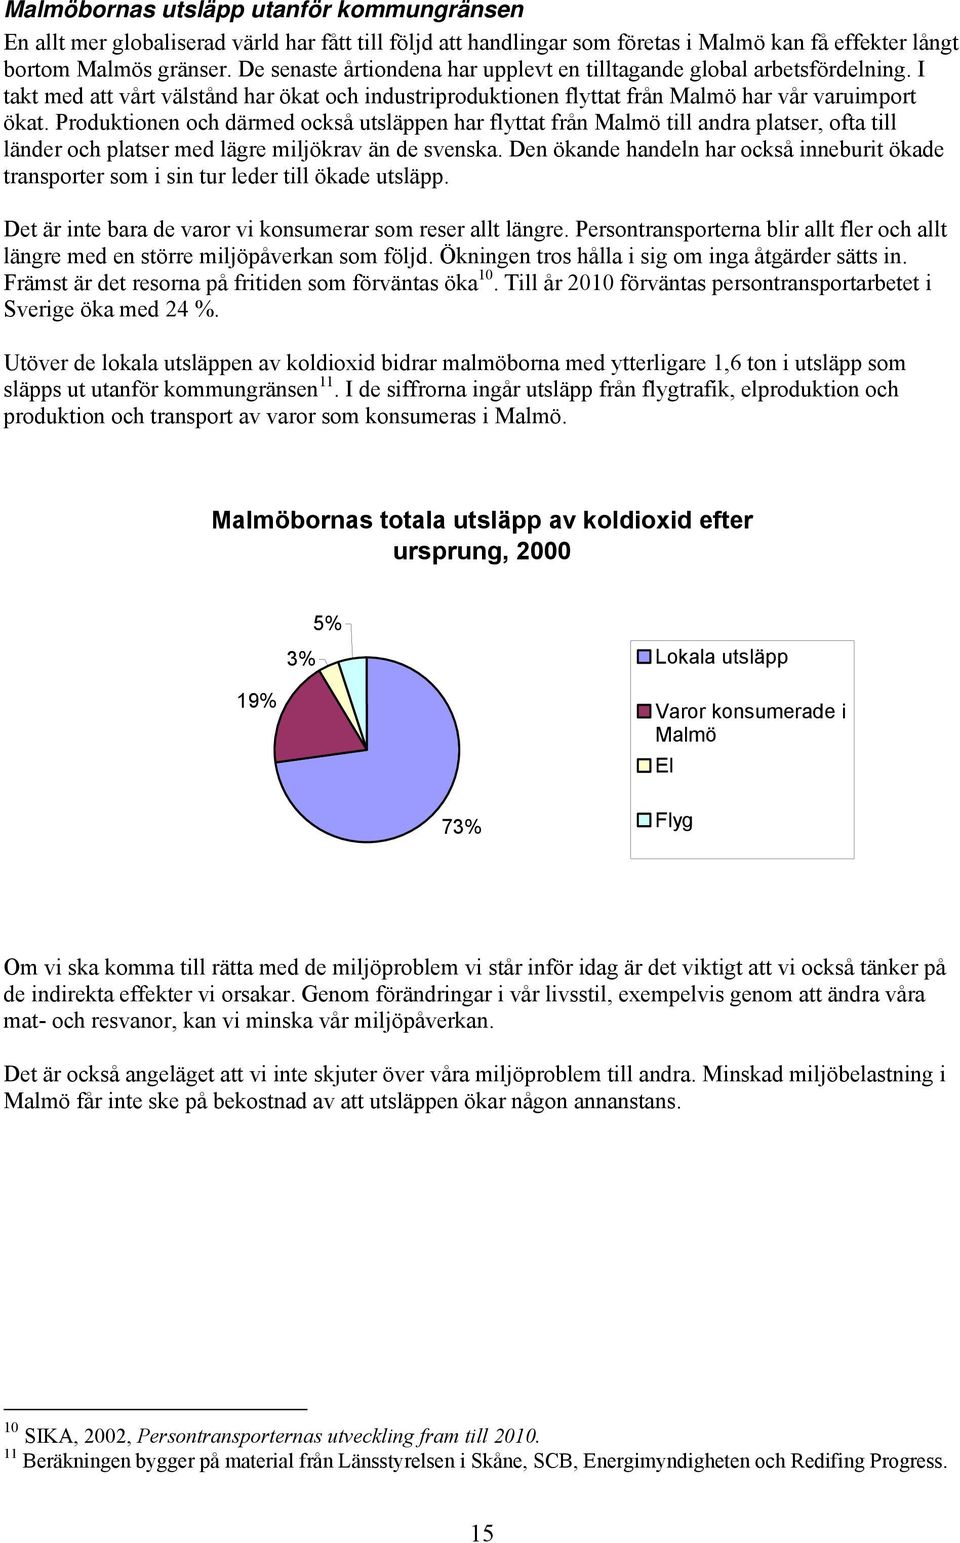 Produktionen och därmed också utsläppen har flyttat från Malmö till andra platser, ofta till länder och platser med lägre miljökrav än de svenska.